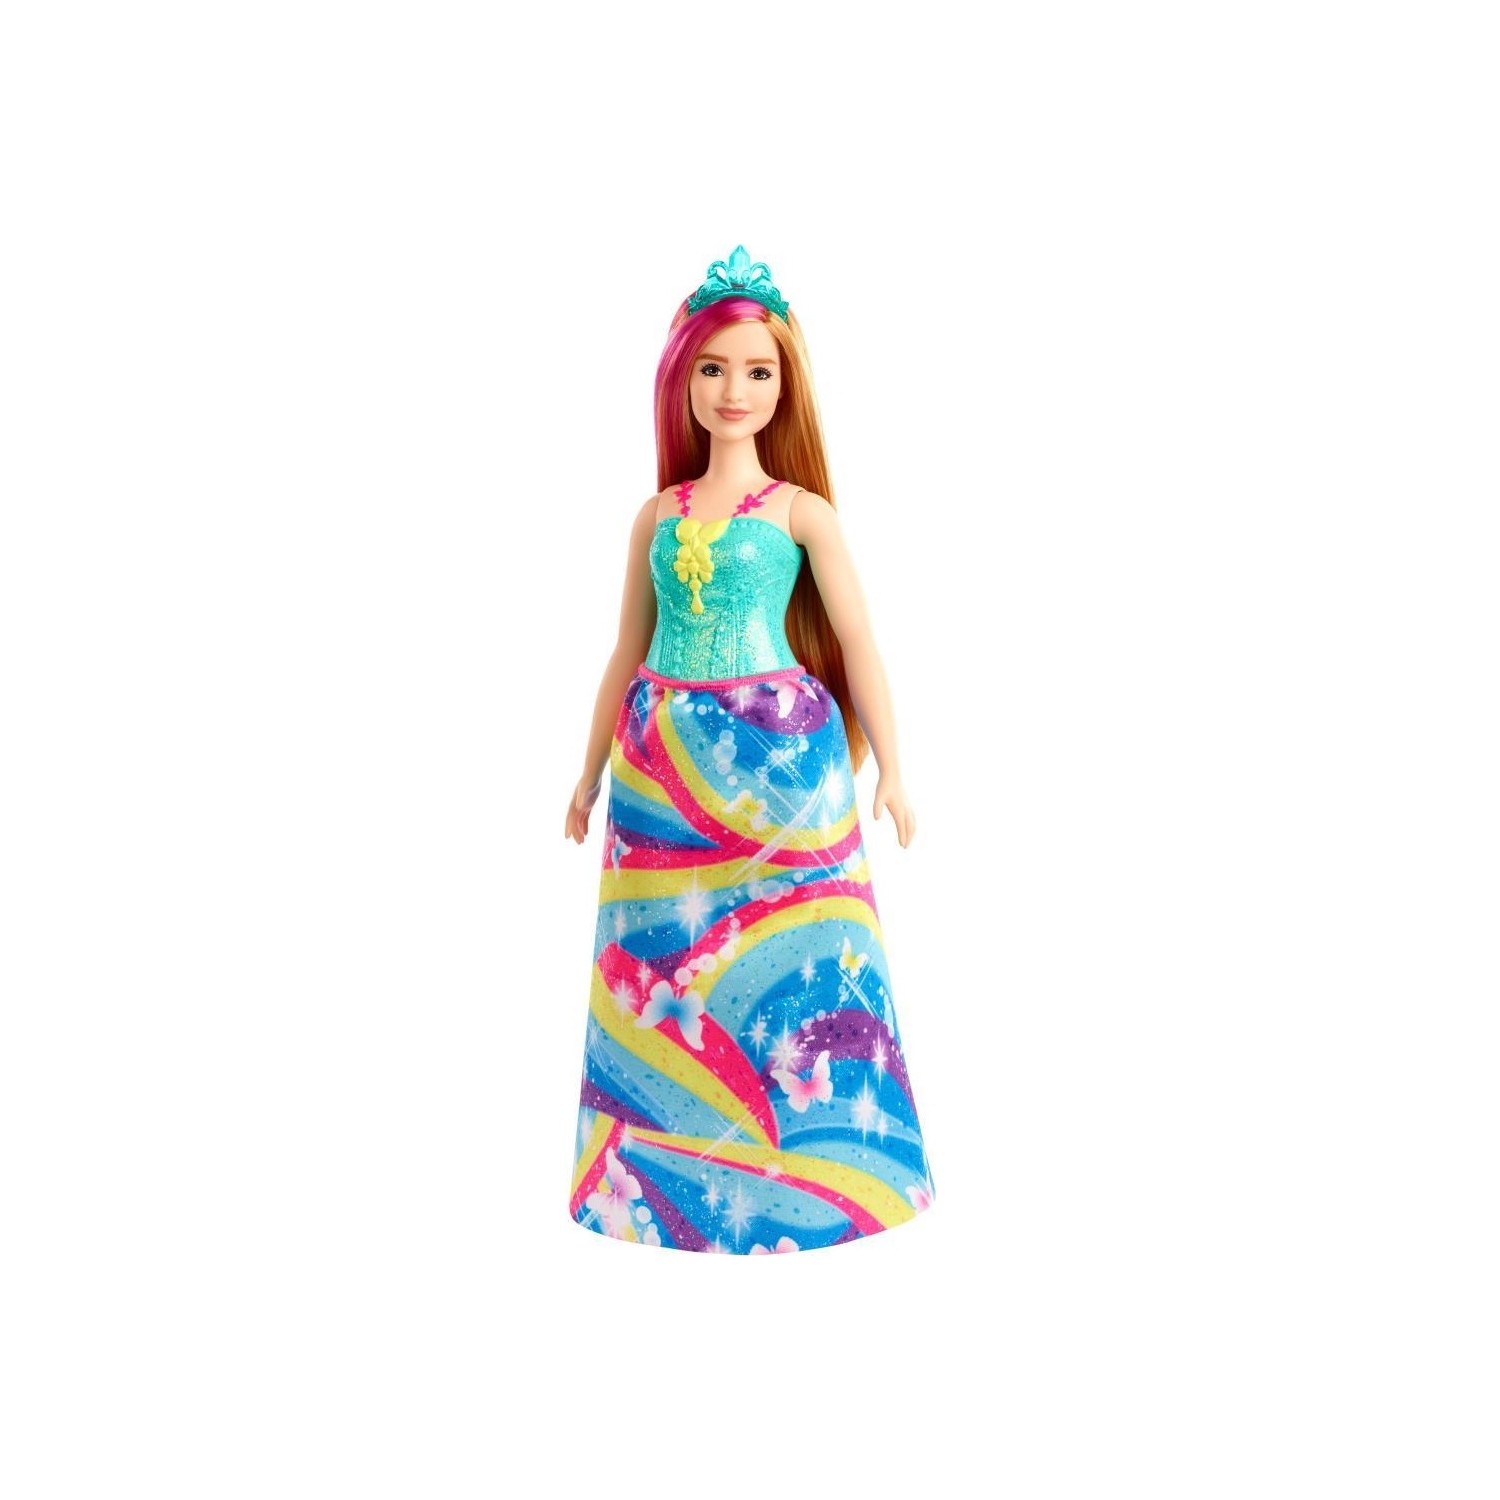 Кукла Barbie Dreamtopia Princess Dolls GJK16